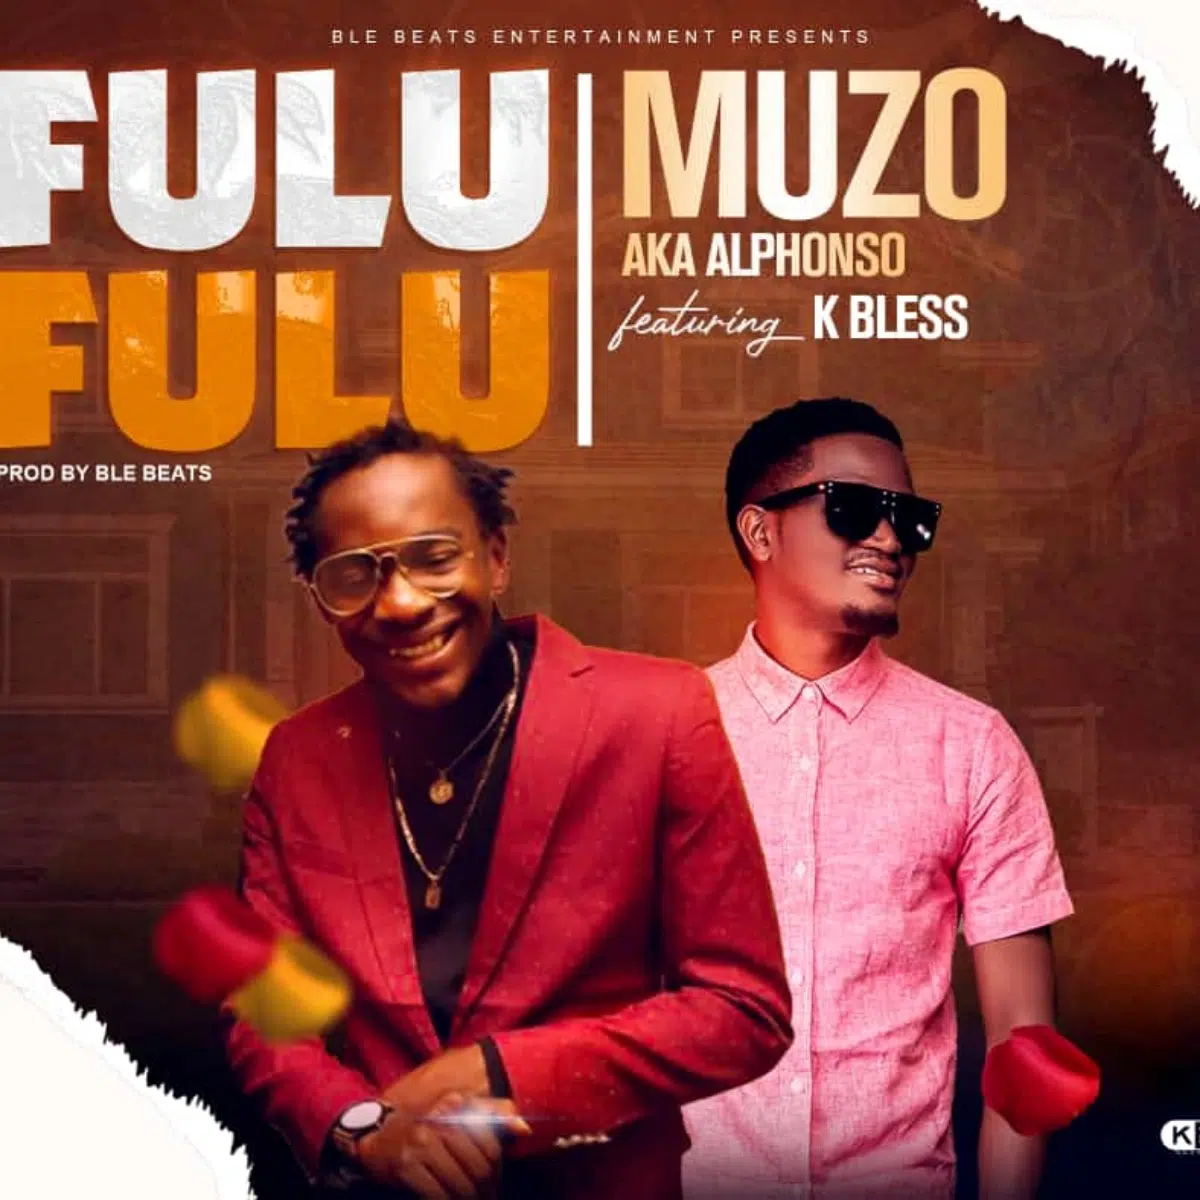 DOWNLOAD: Muzo Aka Alphonso Ft K Bless – “Fulu Fulu” Mp3